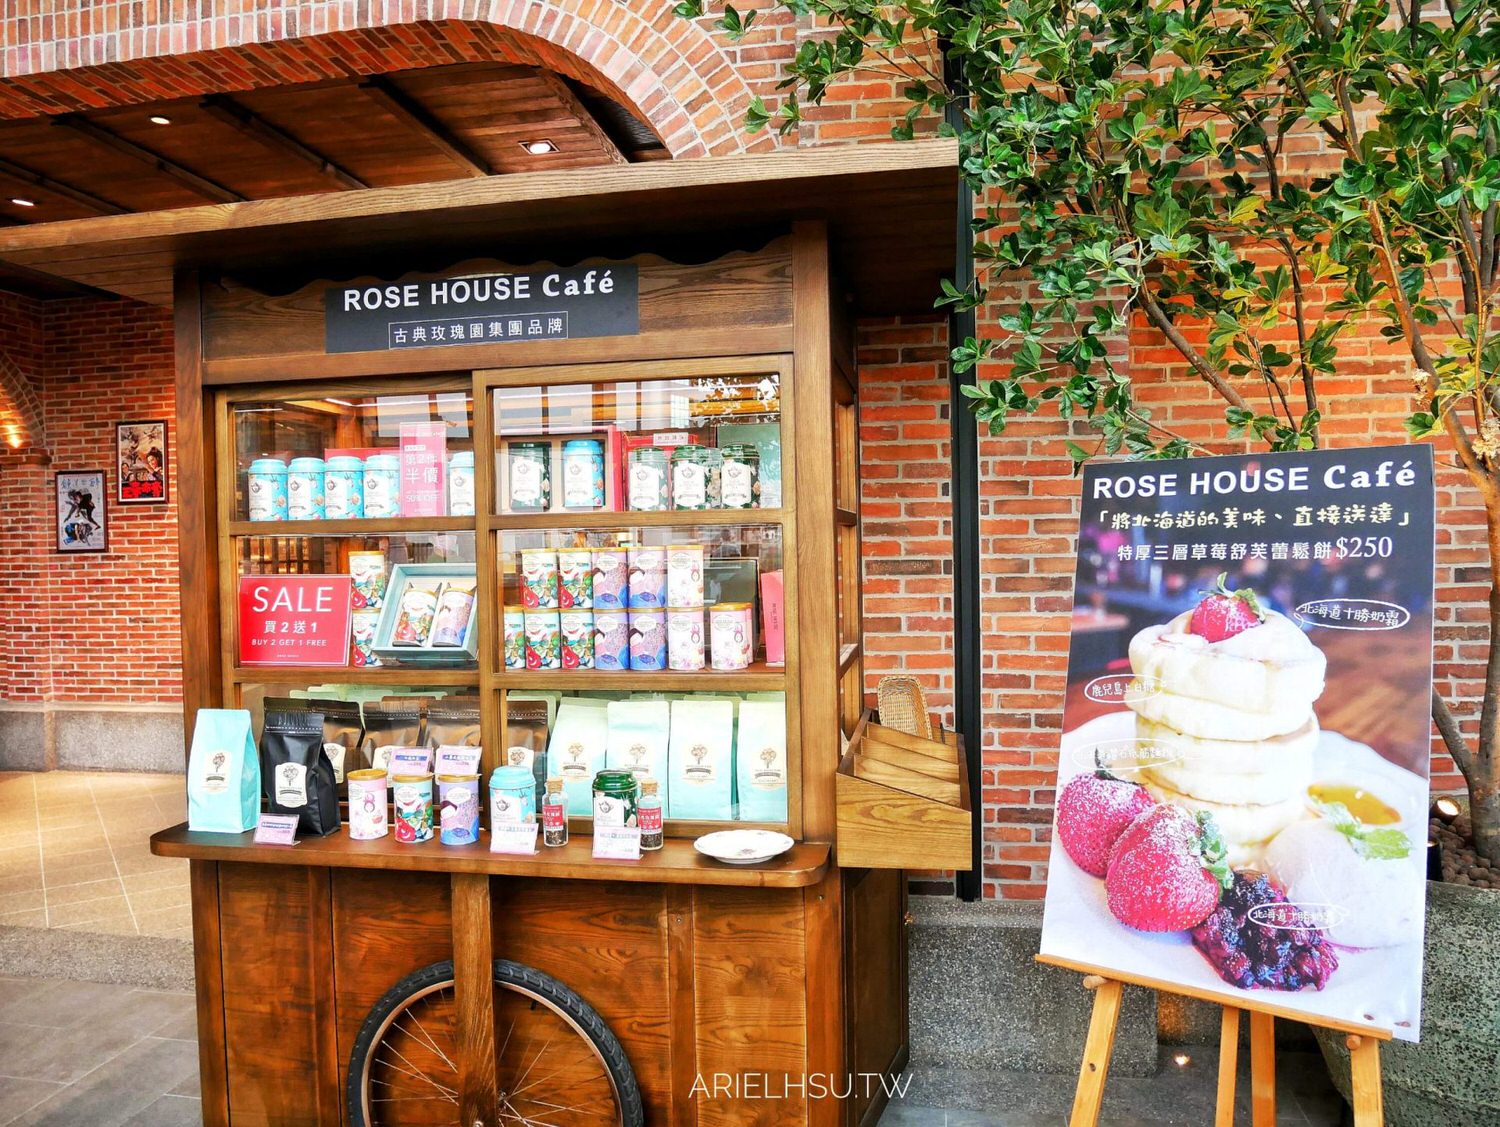 【食記】台北遠百信義A13甜點蛋糕 | ROSE HOUSE Café 下午茶必吃特厚日本北海道草莓舒芙蕾，平價享受精品咖啡、日本直達級甜點